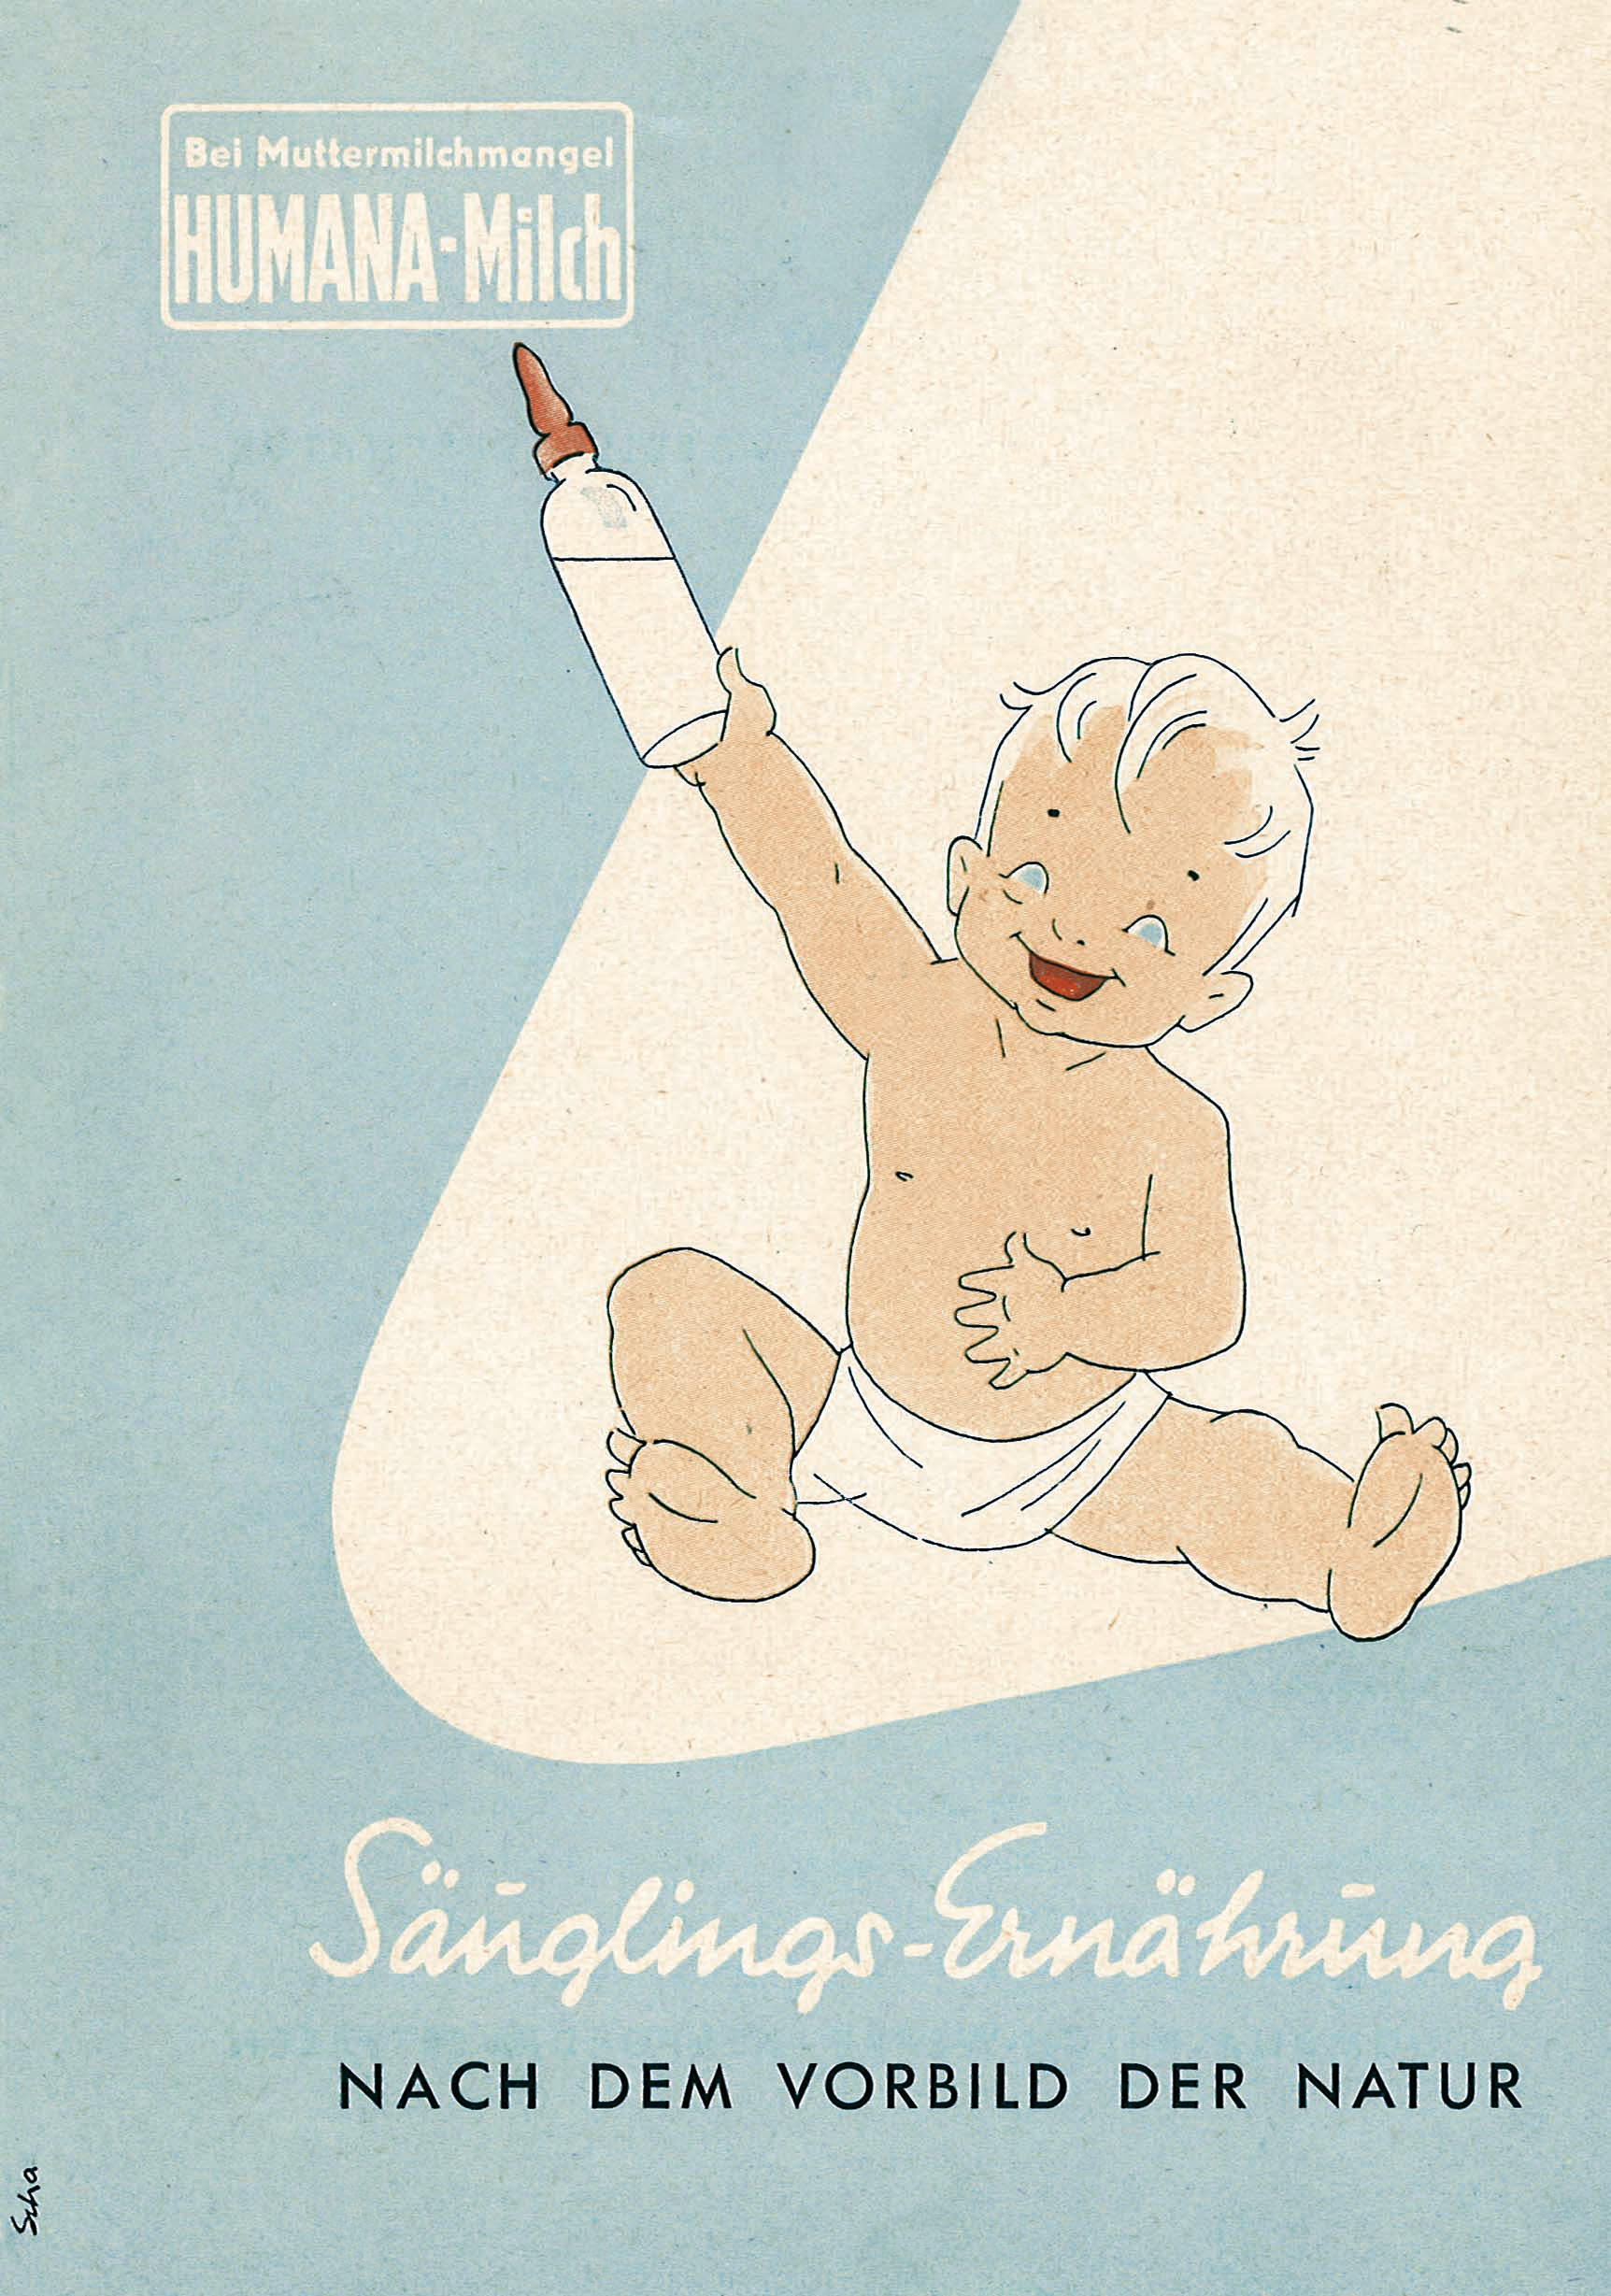 cartel ilustrado de Humana Baby